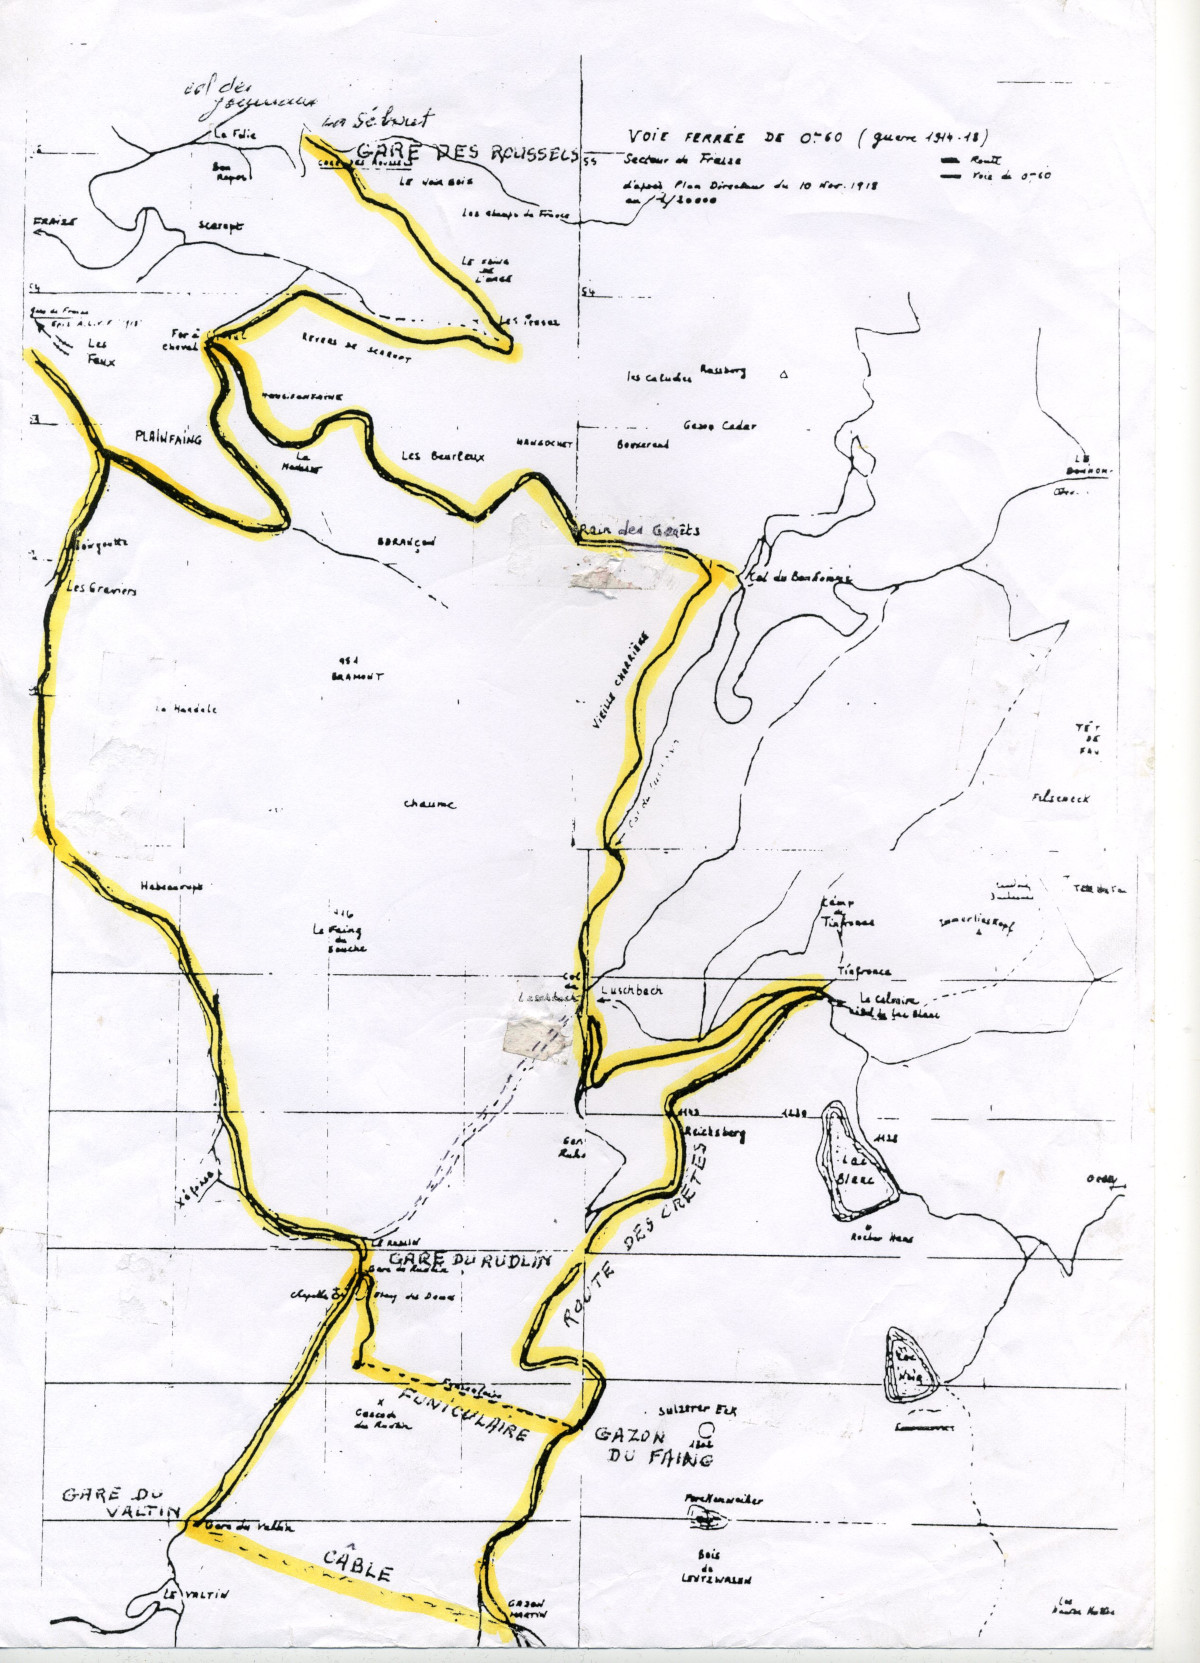 Le plan des voies du Tacot d'après le Plan Directeur du 10 novembre 1918.<br>La construction s'est étalée entre le second semestre 1915 et le début 1916 ; le démontage a débuté dès 1919.